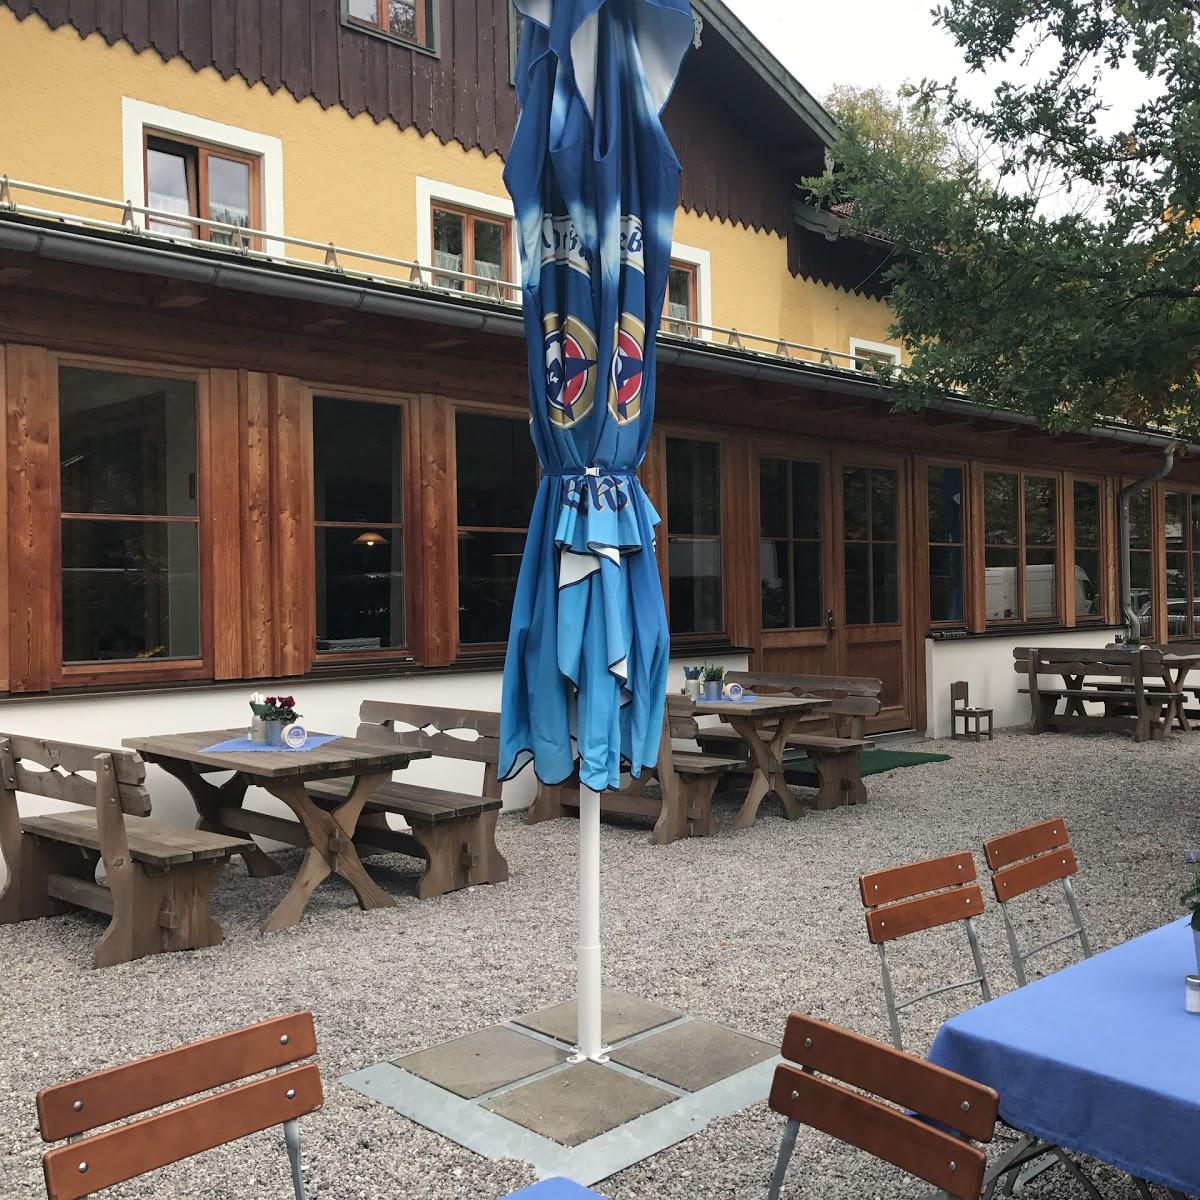 Restaurant "Gasthaus Alte Schießstätte" in Bad Tölz